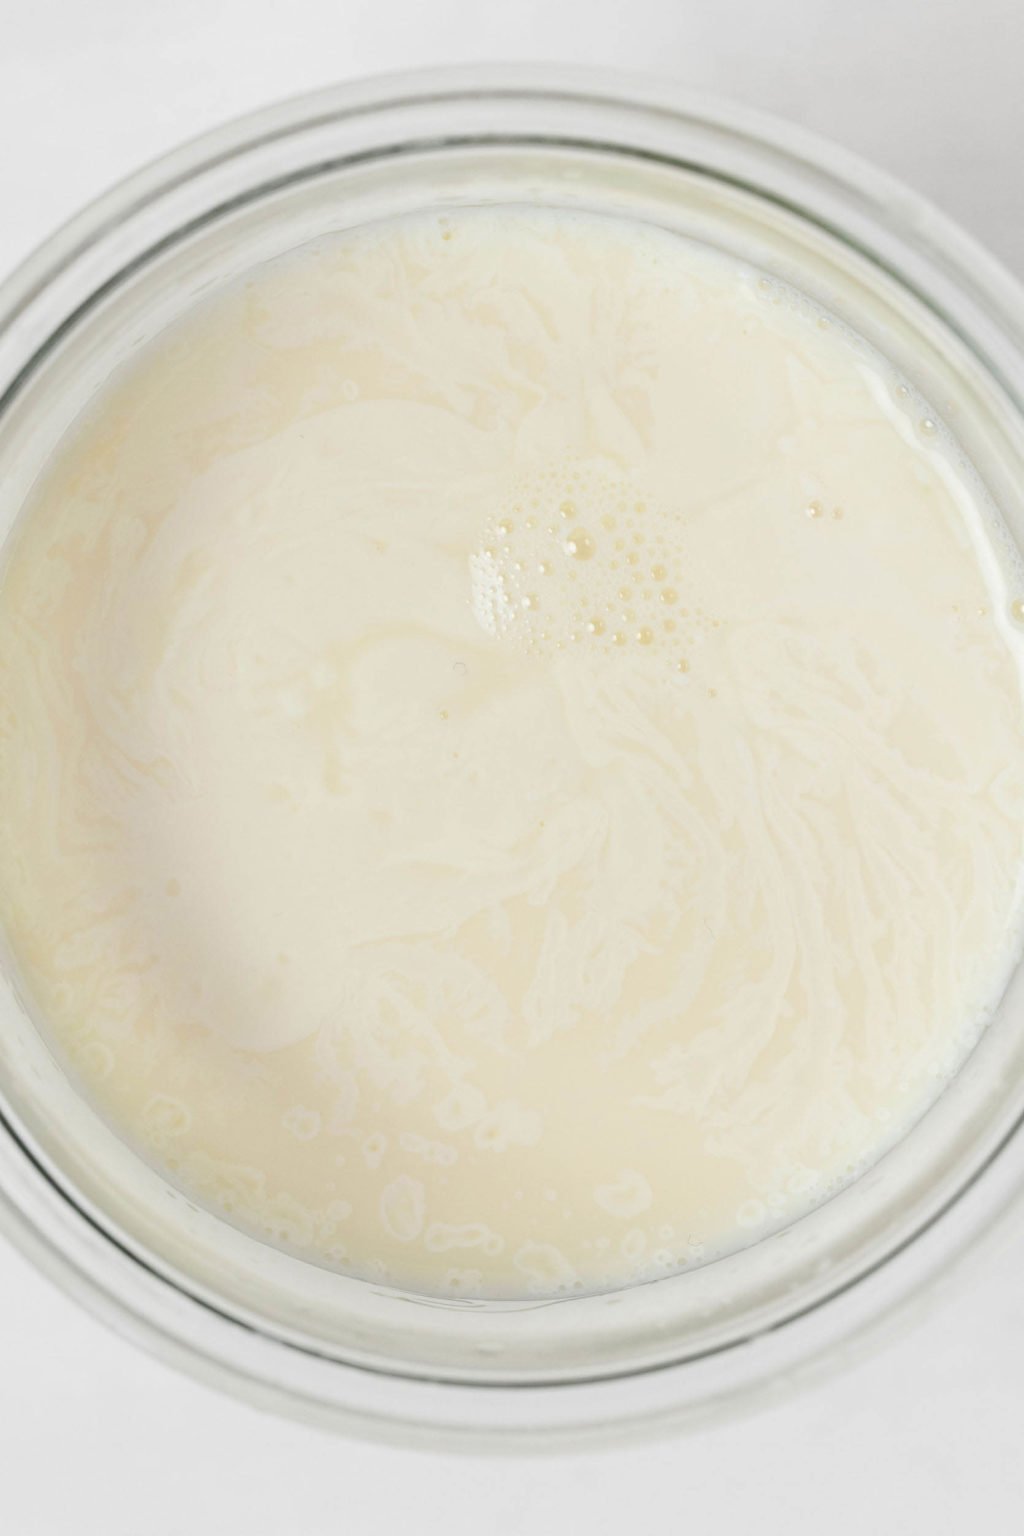 Image du haut du lait dans un bol en verre.